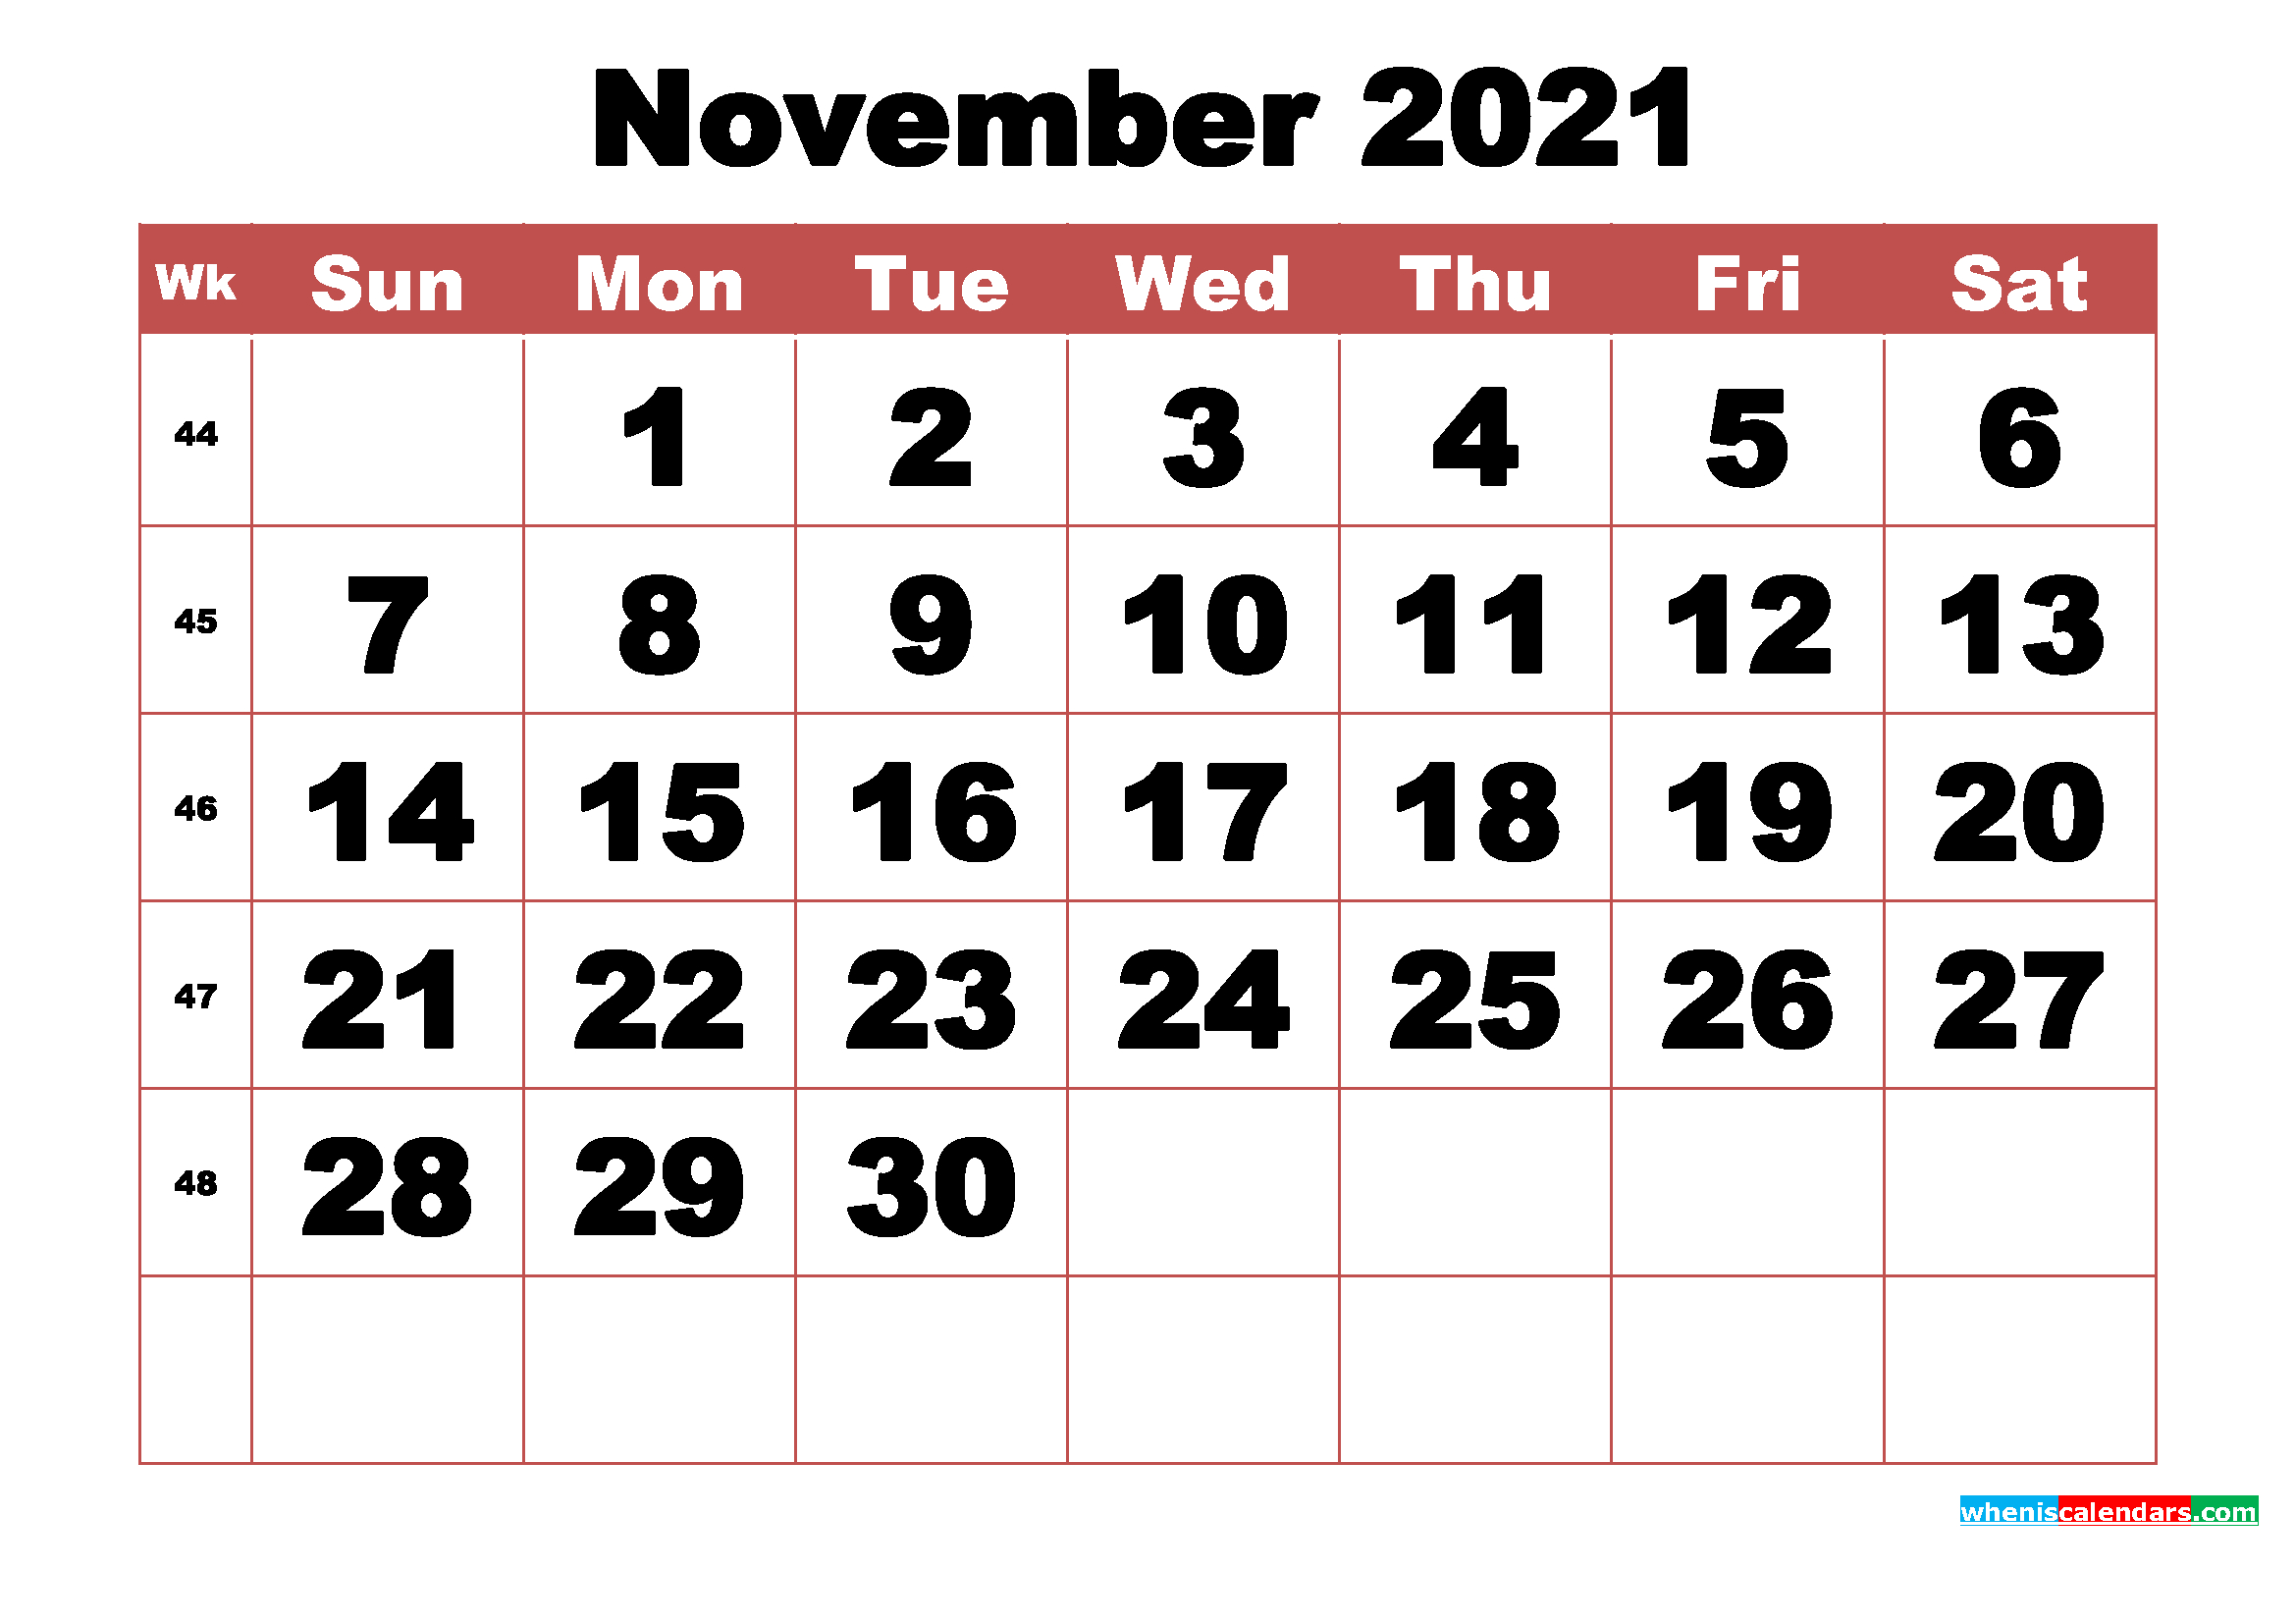 Free Printable November 2021 Calendar With Week Numbers Free Printable November 2021 Calendar